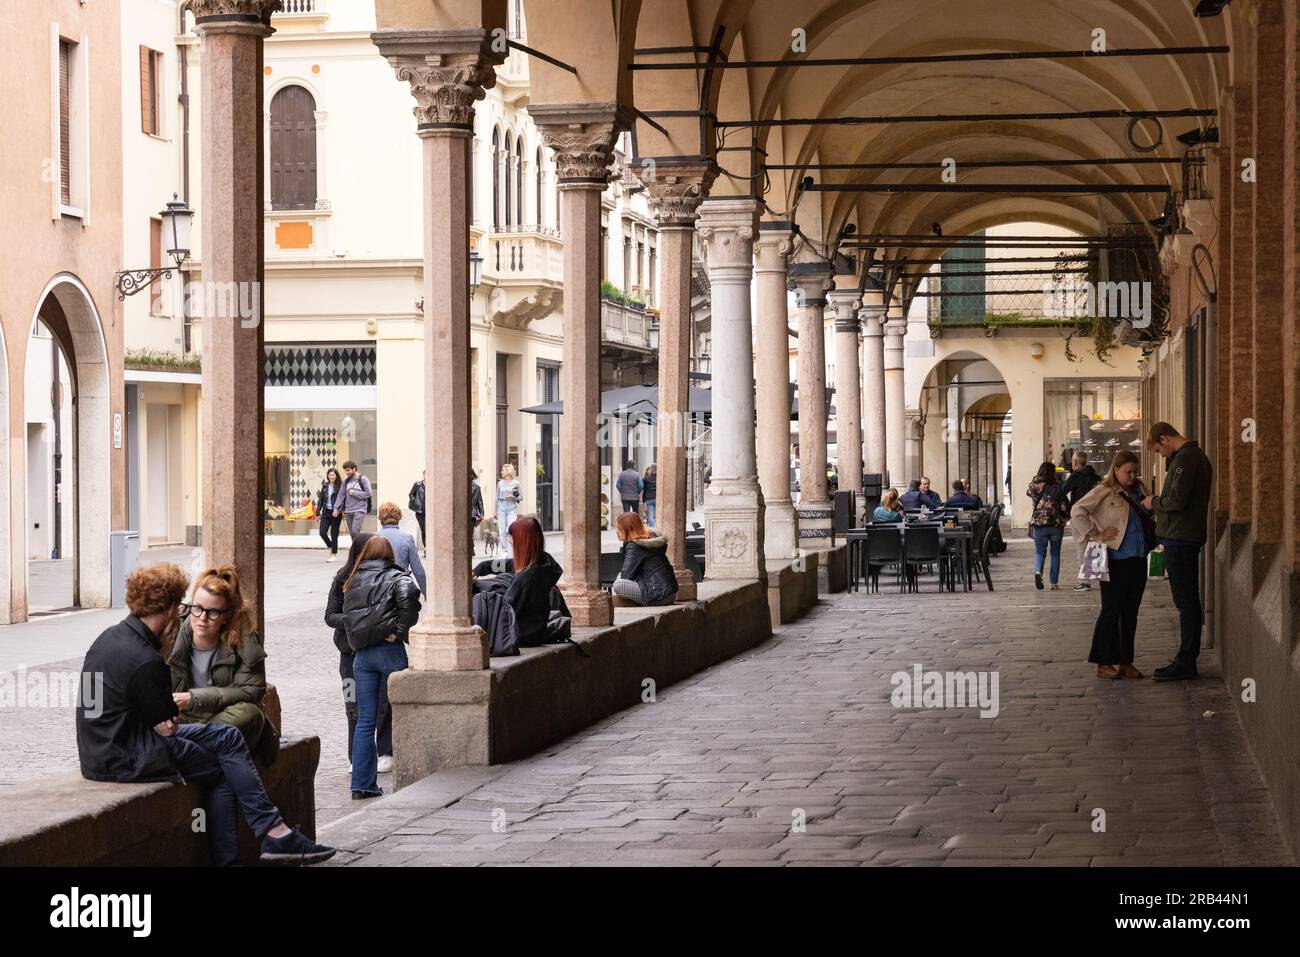 Blick auf die Padua Italien Straße mit Menschen in überdachten Gehwegen oder Säulendecken über dem Bürgersteig auf der Straßenseite, Padua Veneto Italien Europa Stockfoto